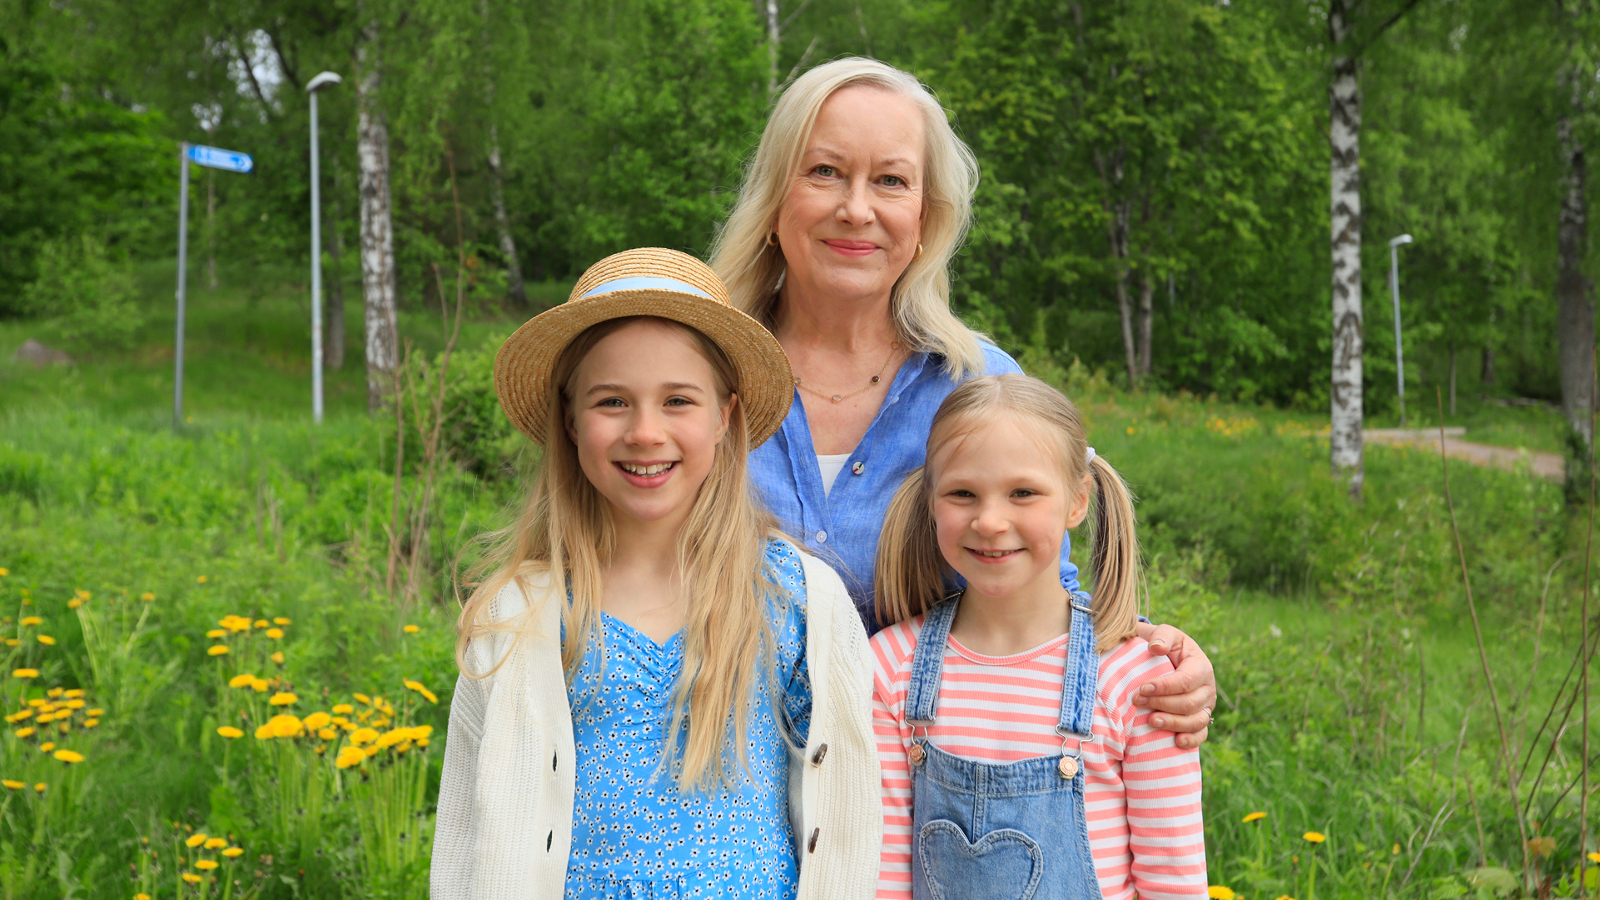 Kuvassa ovat Tiina Nopola ja hänen edessään ovat Eedla Höglund vaalean sinisessä mekossa ja Klaara Höglund vaalean sinisessä haalarissa. He seisovat vihreässä kesäympäristössä.